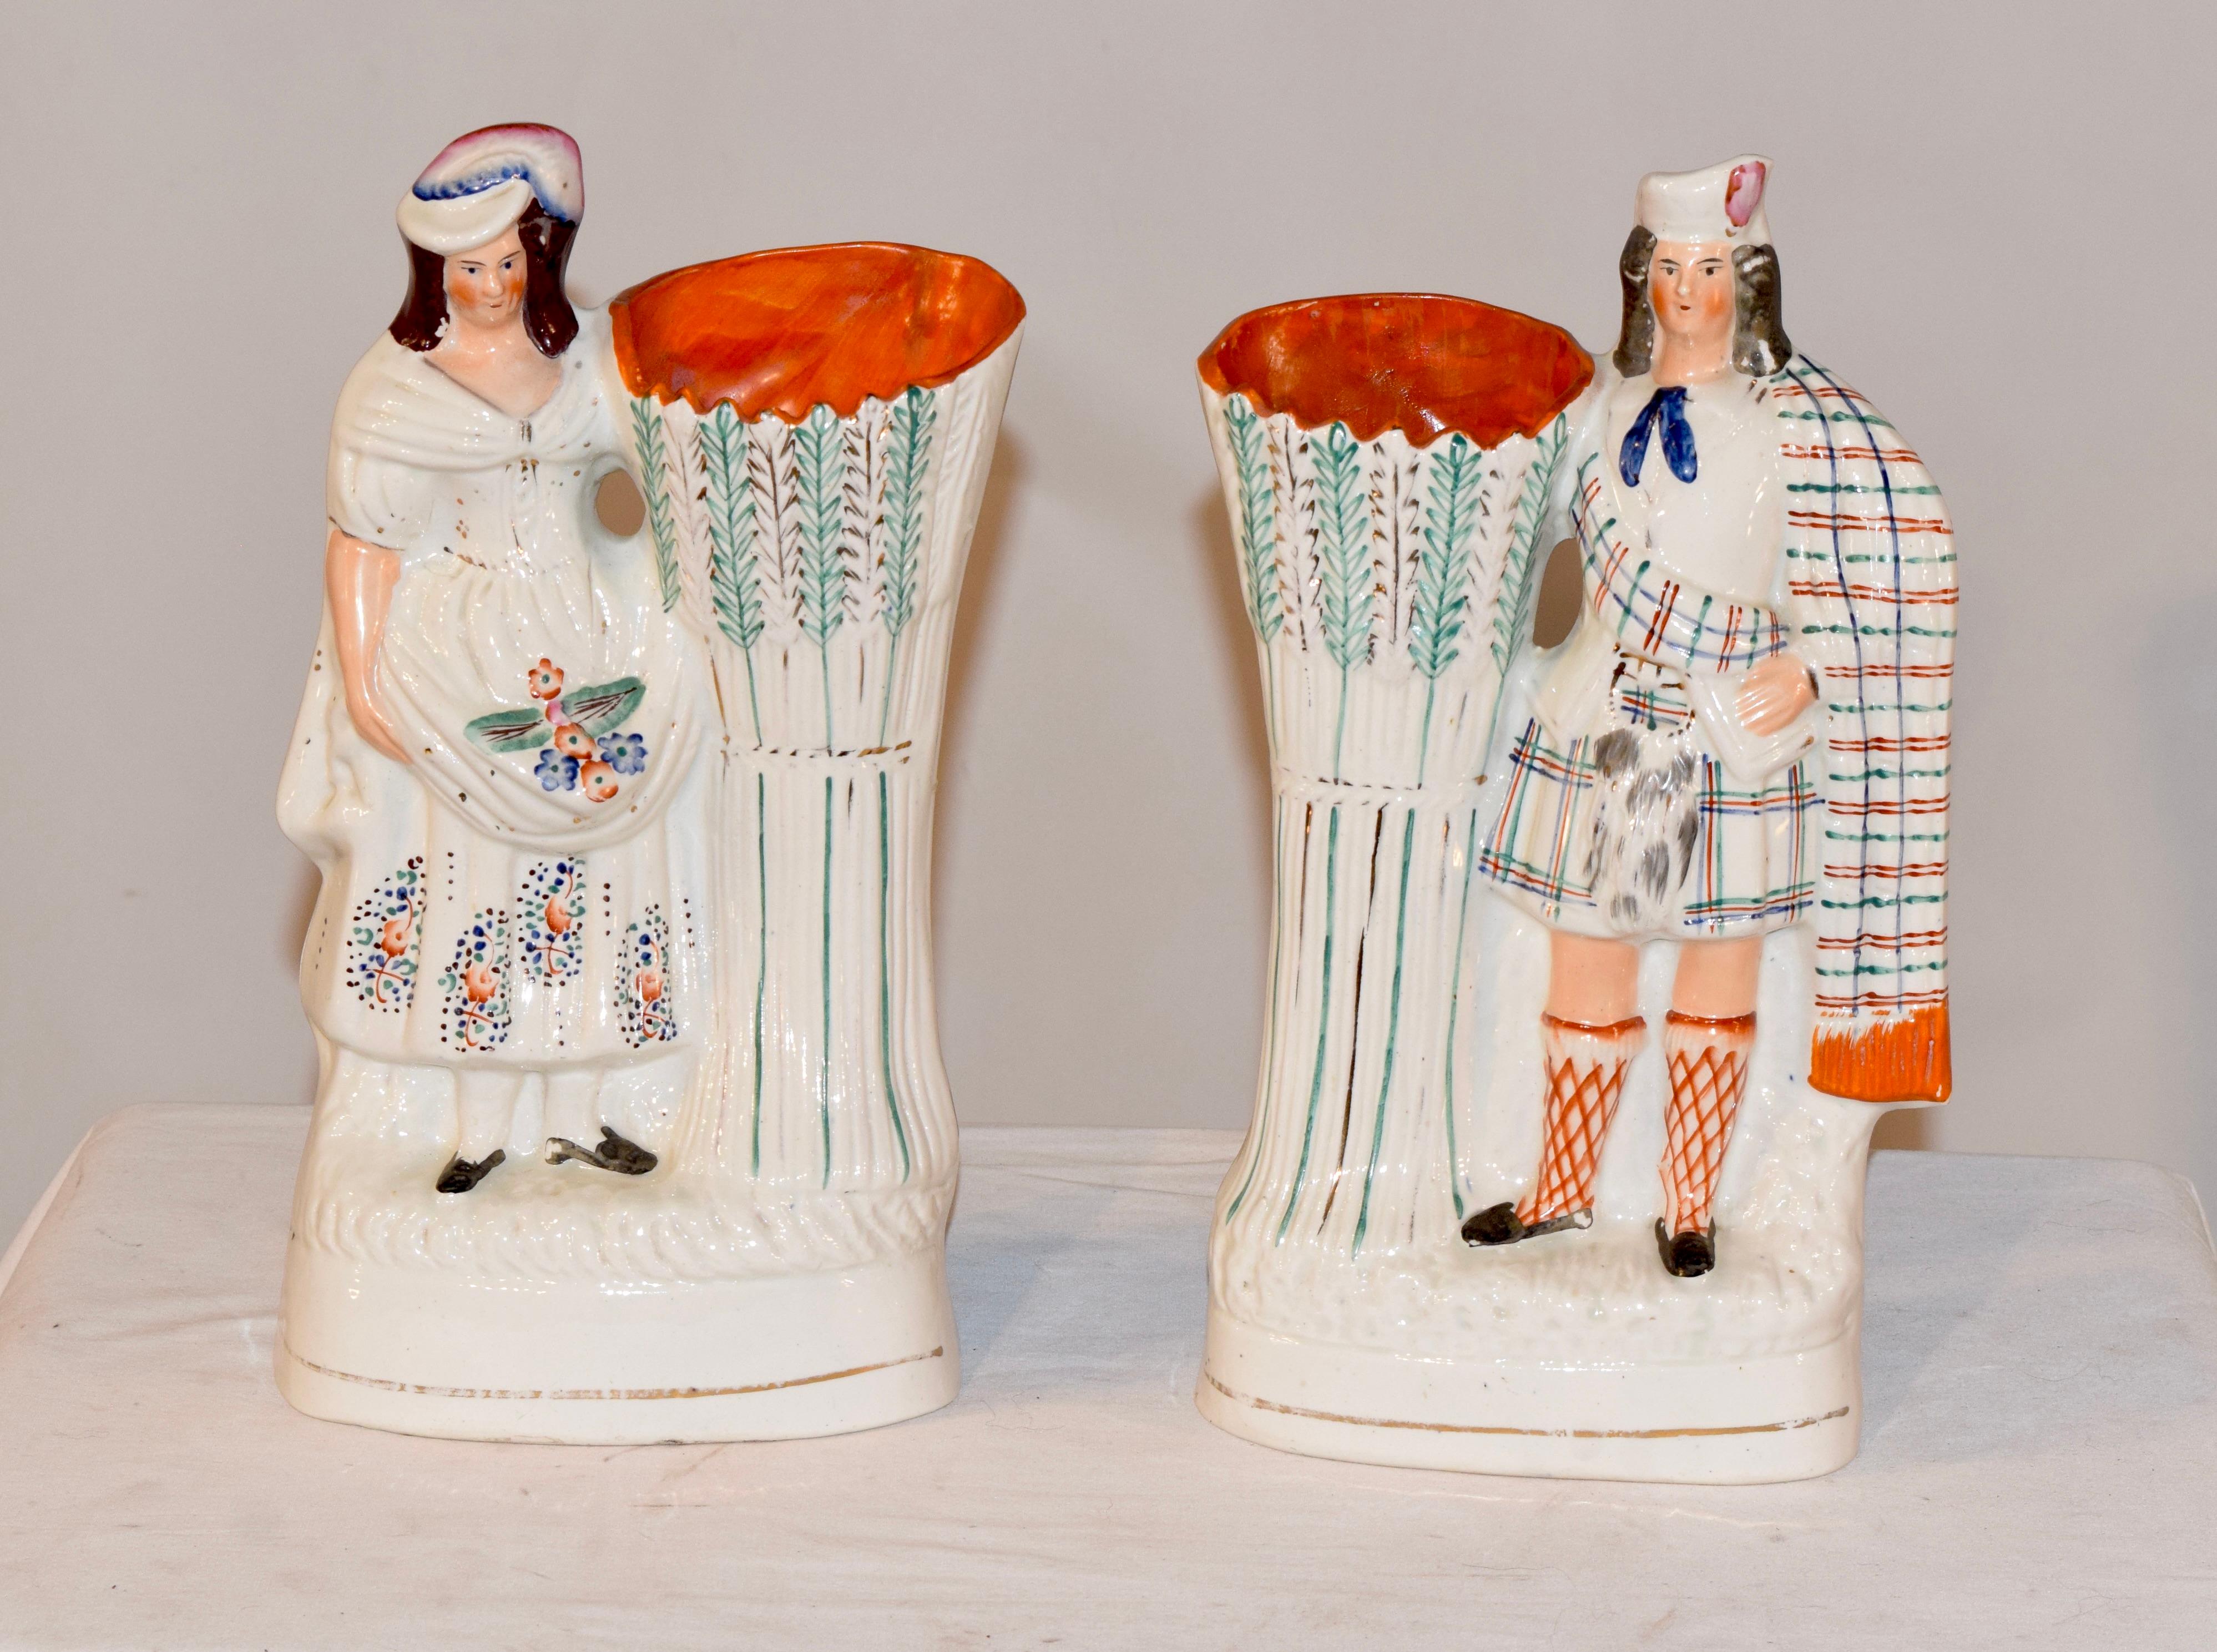 Zwei Staffordshire-Vasen aus dem 19. Jahrhundert mit der Darstellung von Prinzessin Louise und ihrem Ehemann John Campbell, dem 9. Prinzessin Louise war das sechste Kind von Königin Victoria und Prinz Albert. Sie war eine begabte Künstlerin und